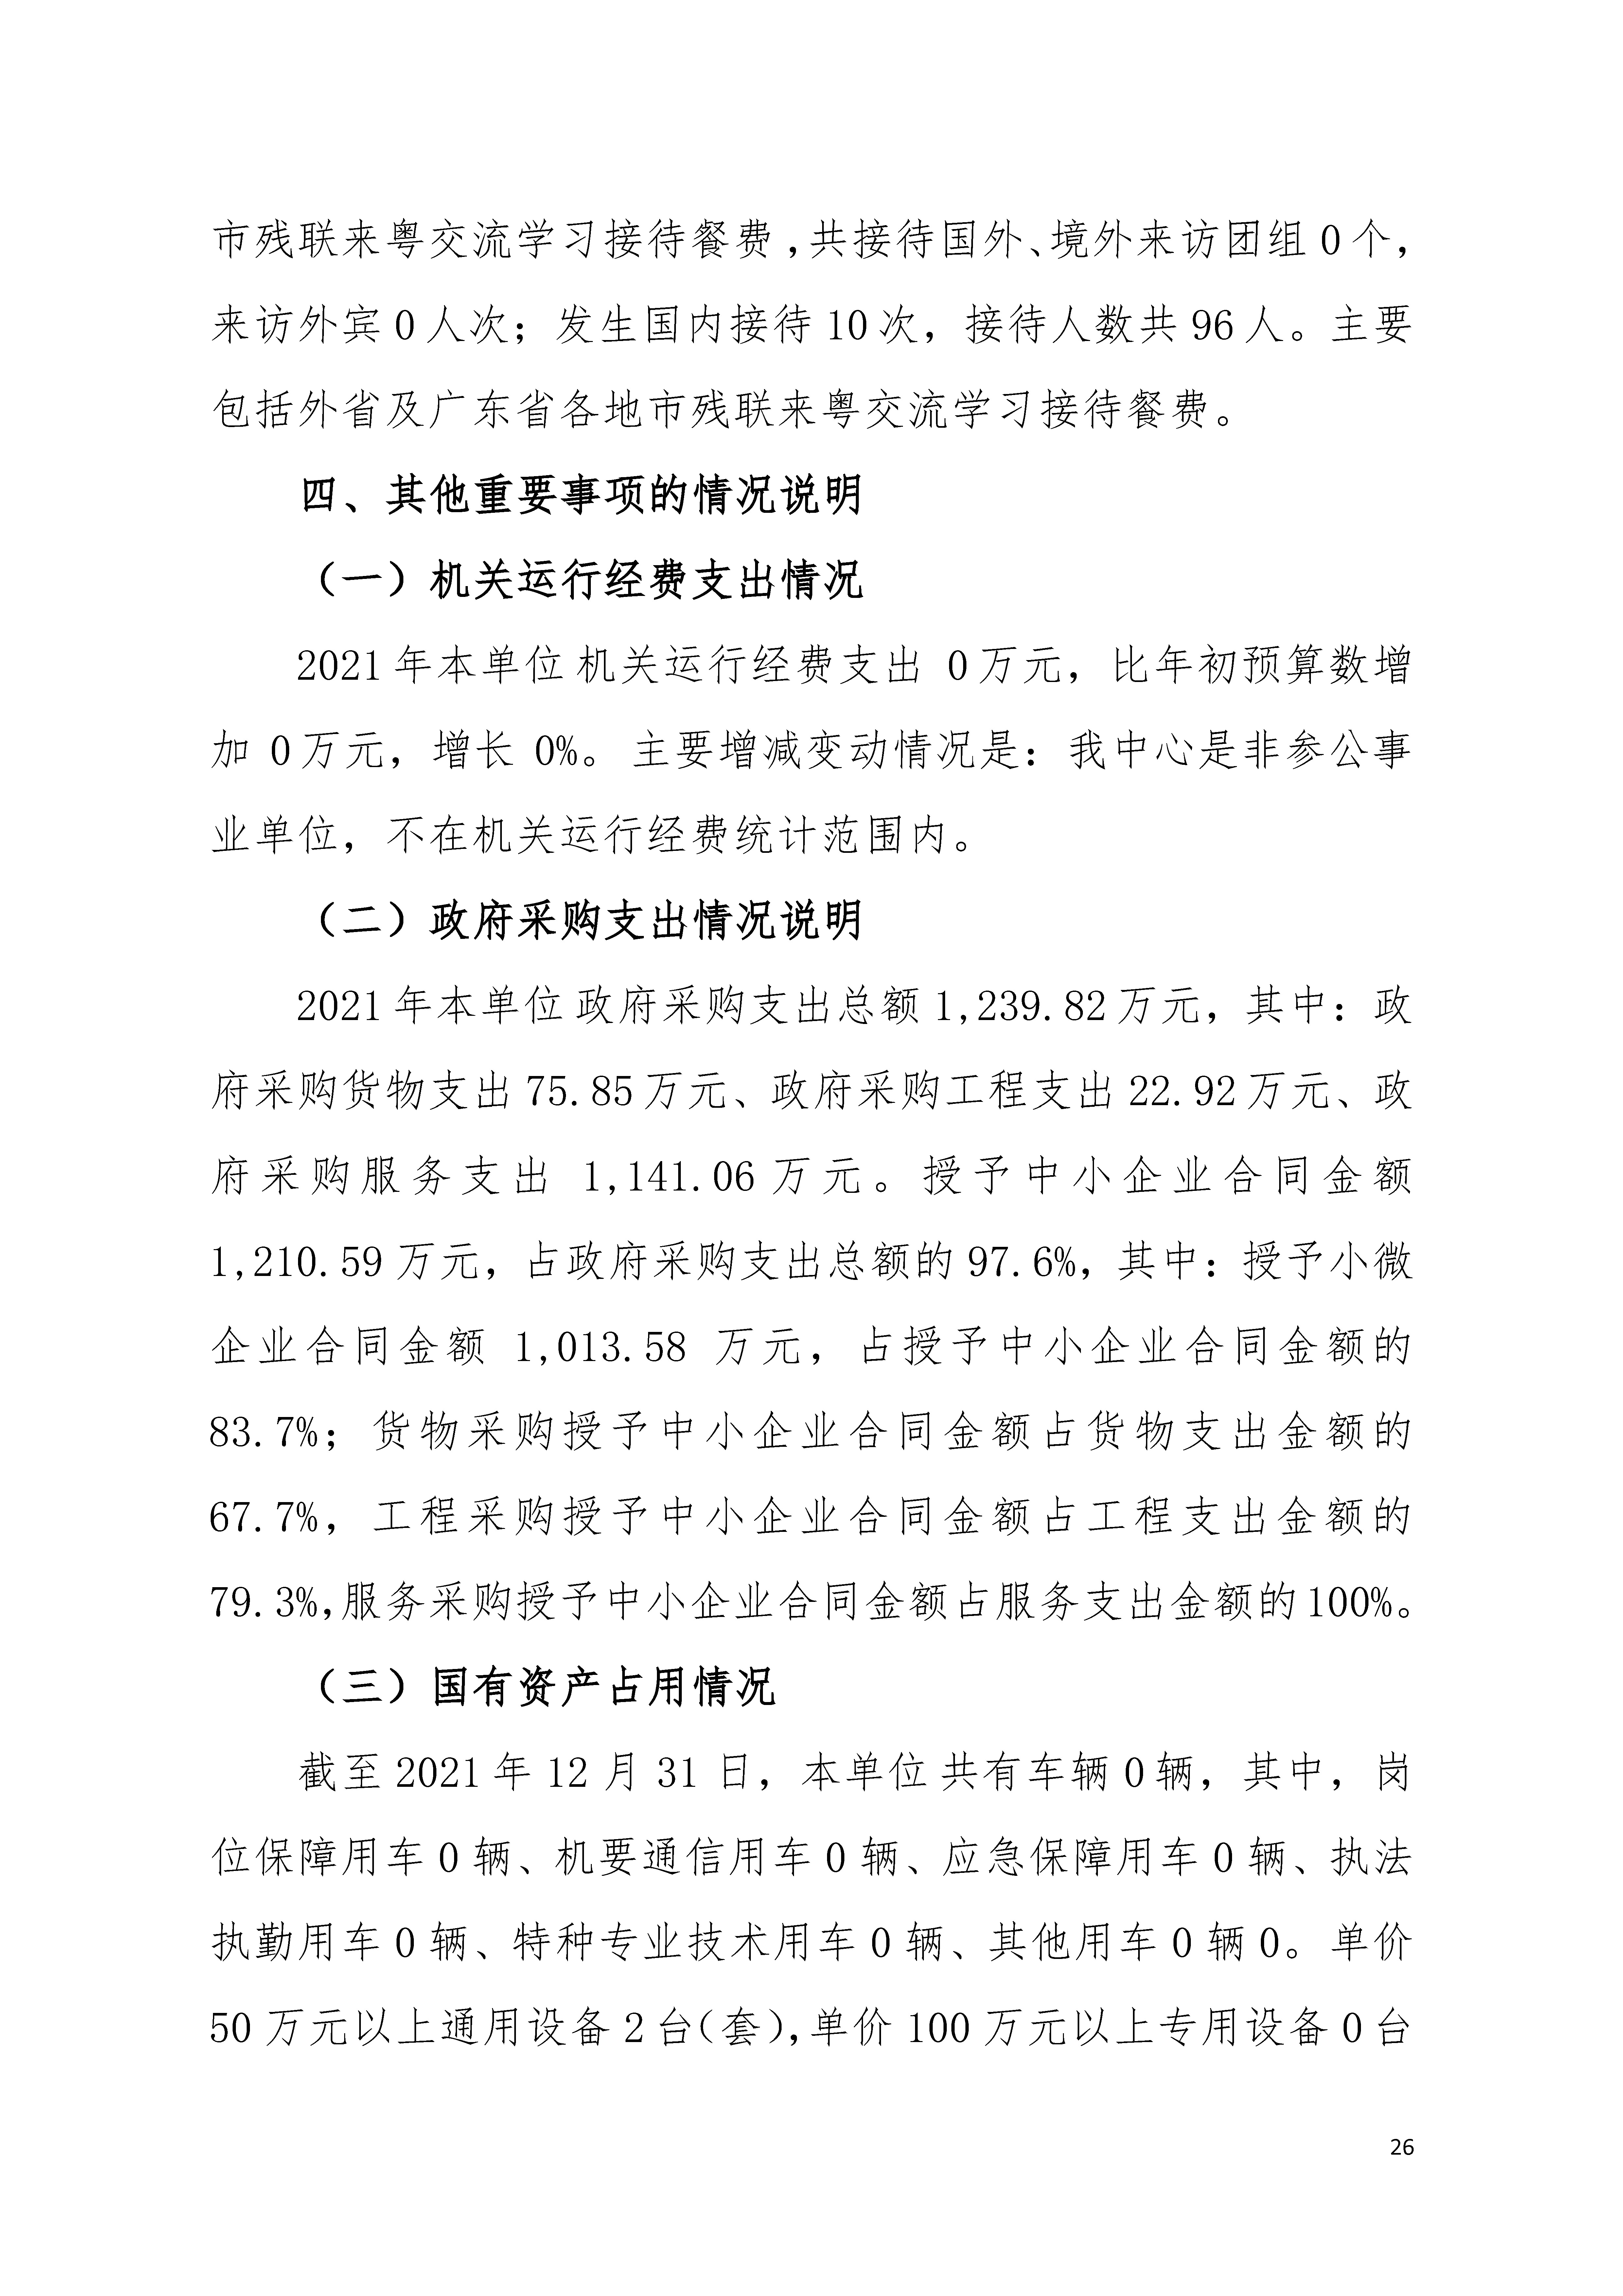 2021年广东省残疾人康复中心部门决算 0629_页面_26.jpg